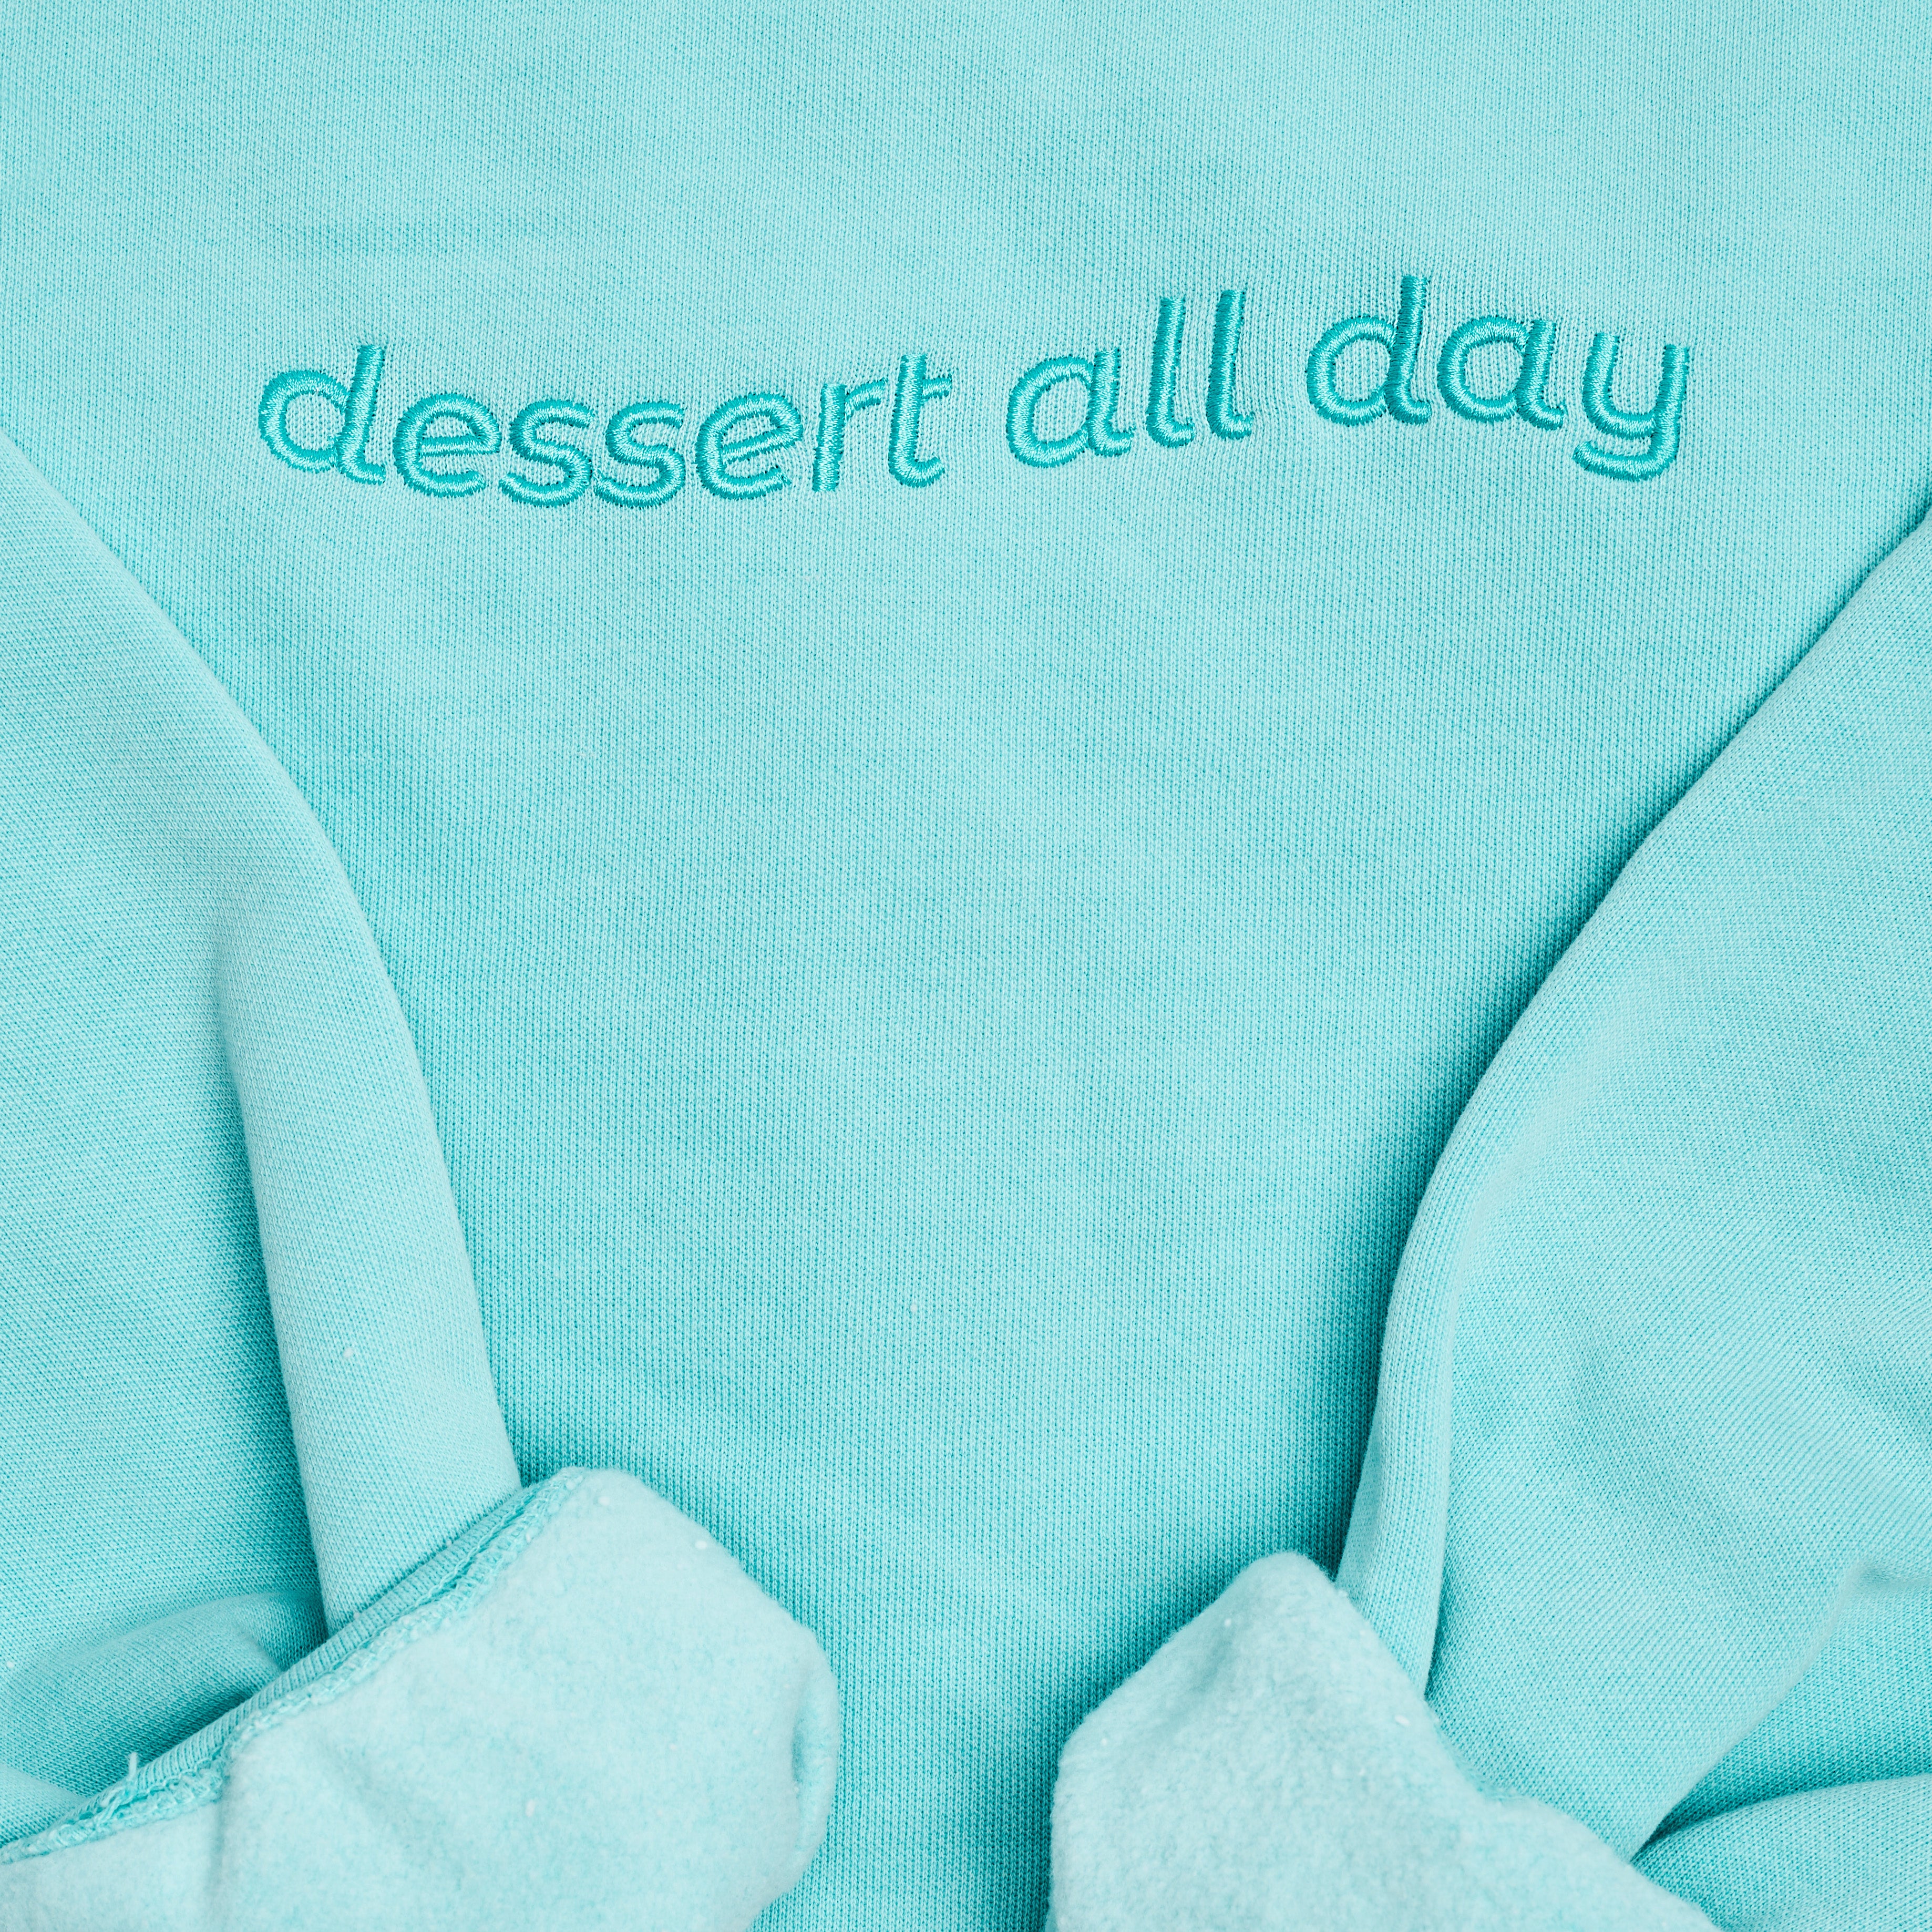 Dessert All Day Sweatshirt front